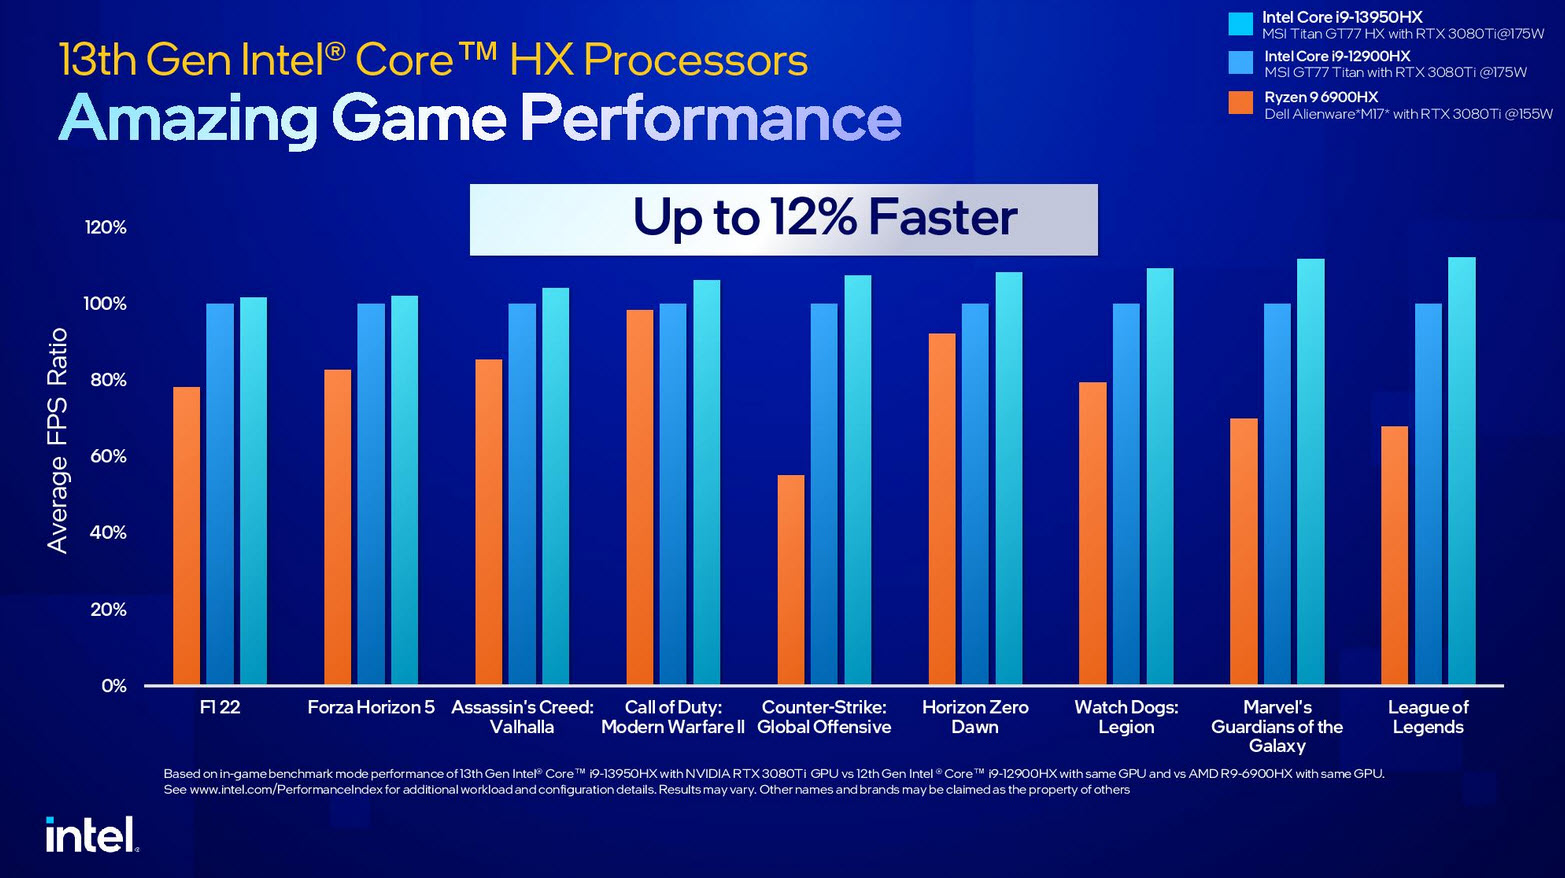 2023 01 05 11 43 40 อินเทลเปิดตัวซีพียู Intel 13th Gen ในรุ่น Mobile ใช้งานในแล็ปท็อปรหัส HX/H/P/U series รุ่นใหม่ล่าสุดมากถึง 23รุ่น รุ่นท็อป Core i9 13980HX 24C/32T ความเร็ว 5.6Ghz 